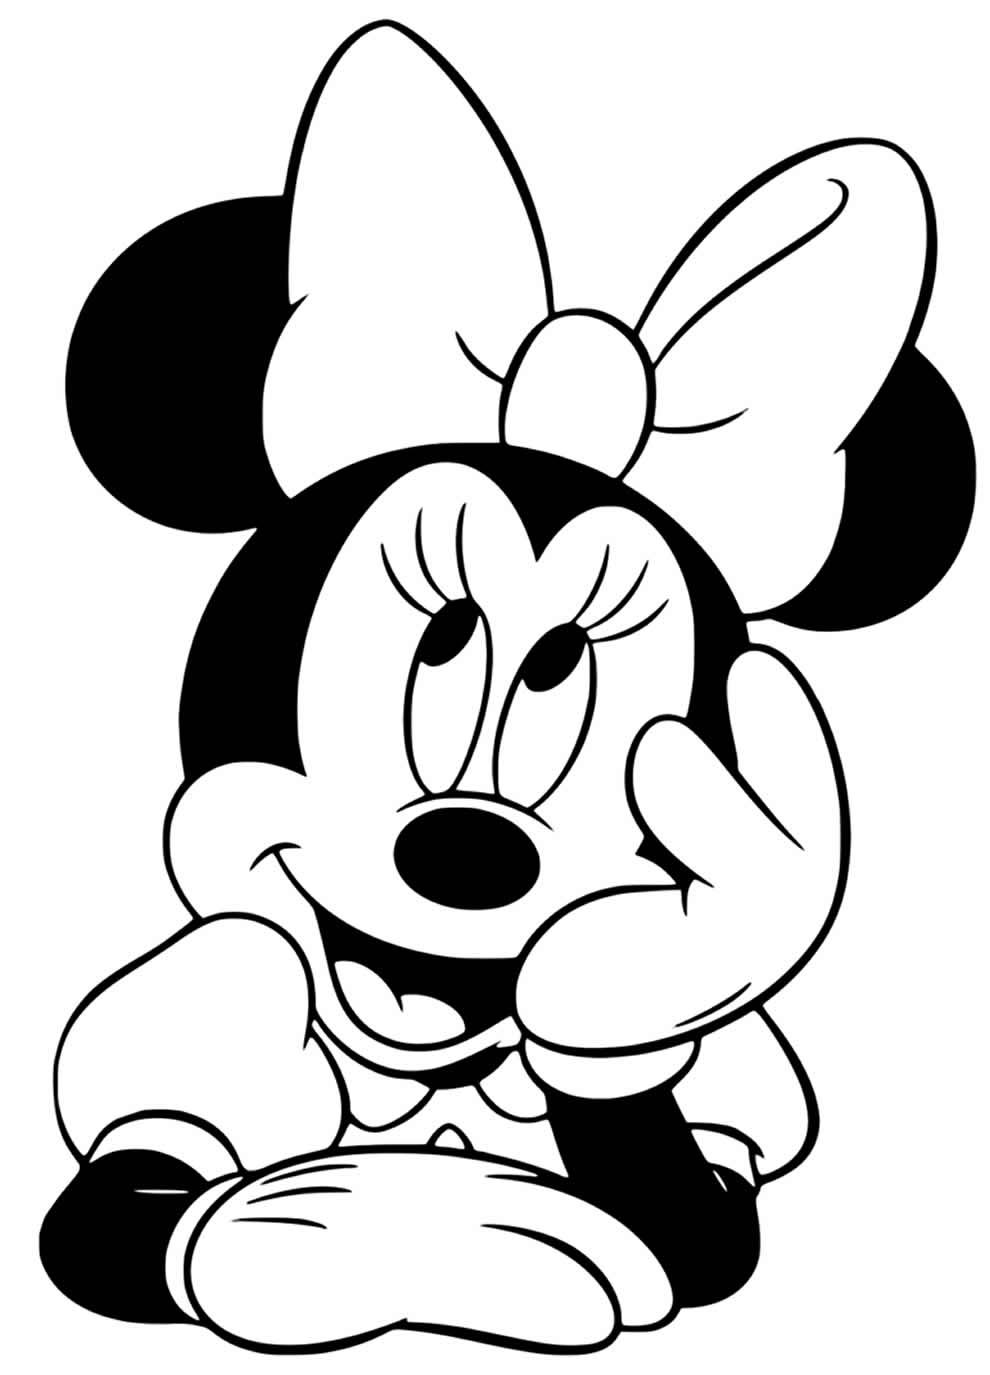 Divirta-se Colorindo a Minnie: Desenhos Encantadores para Alegrar seu Dia